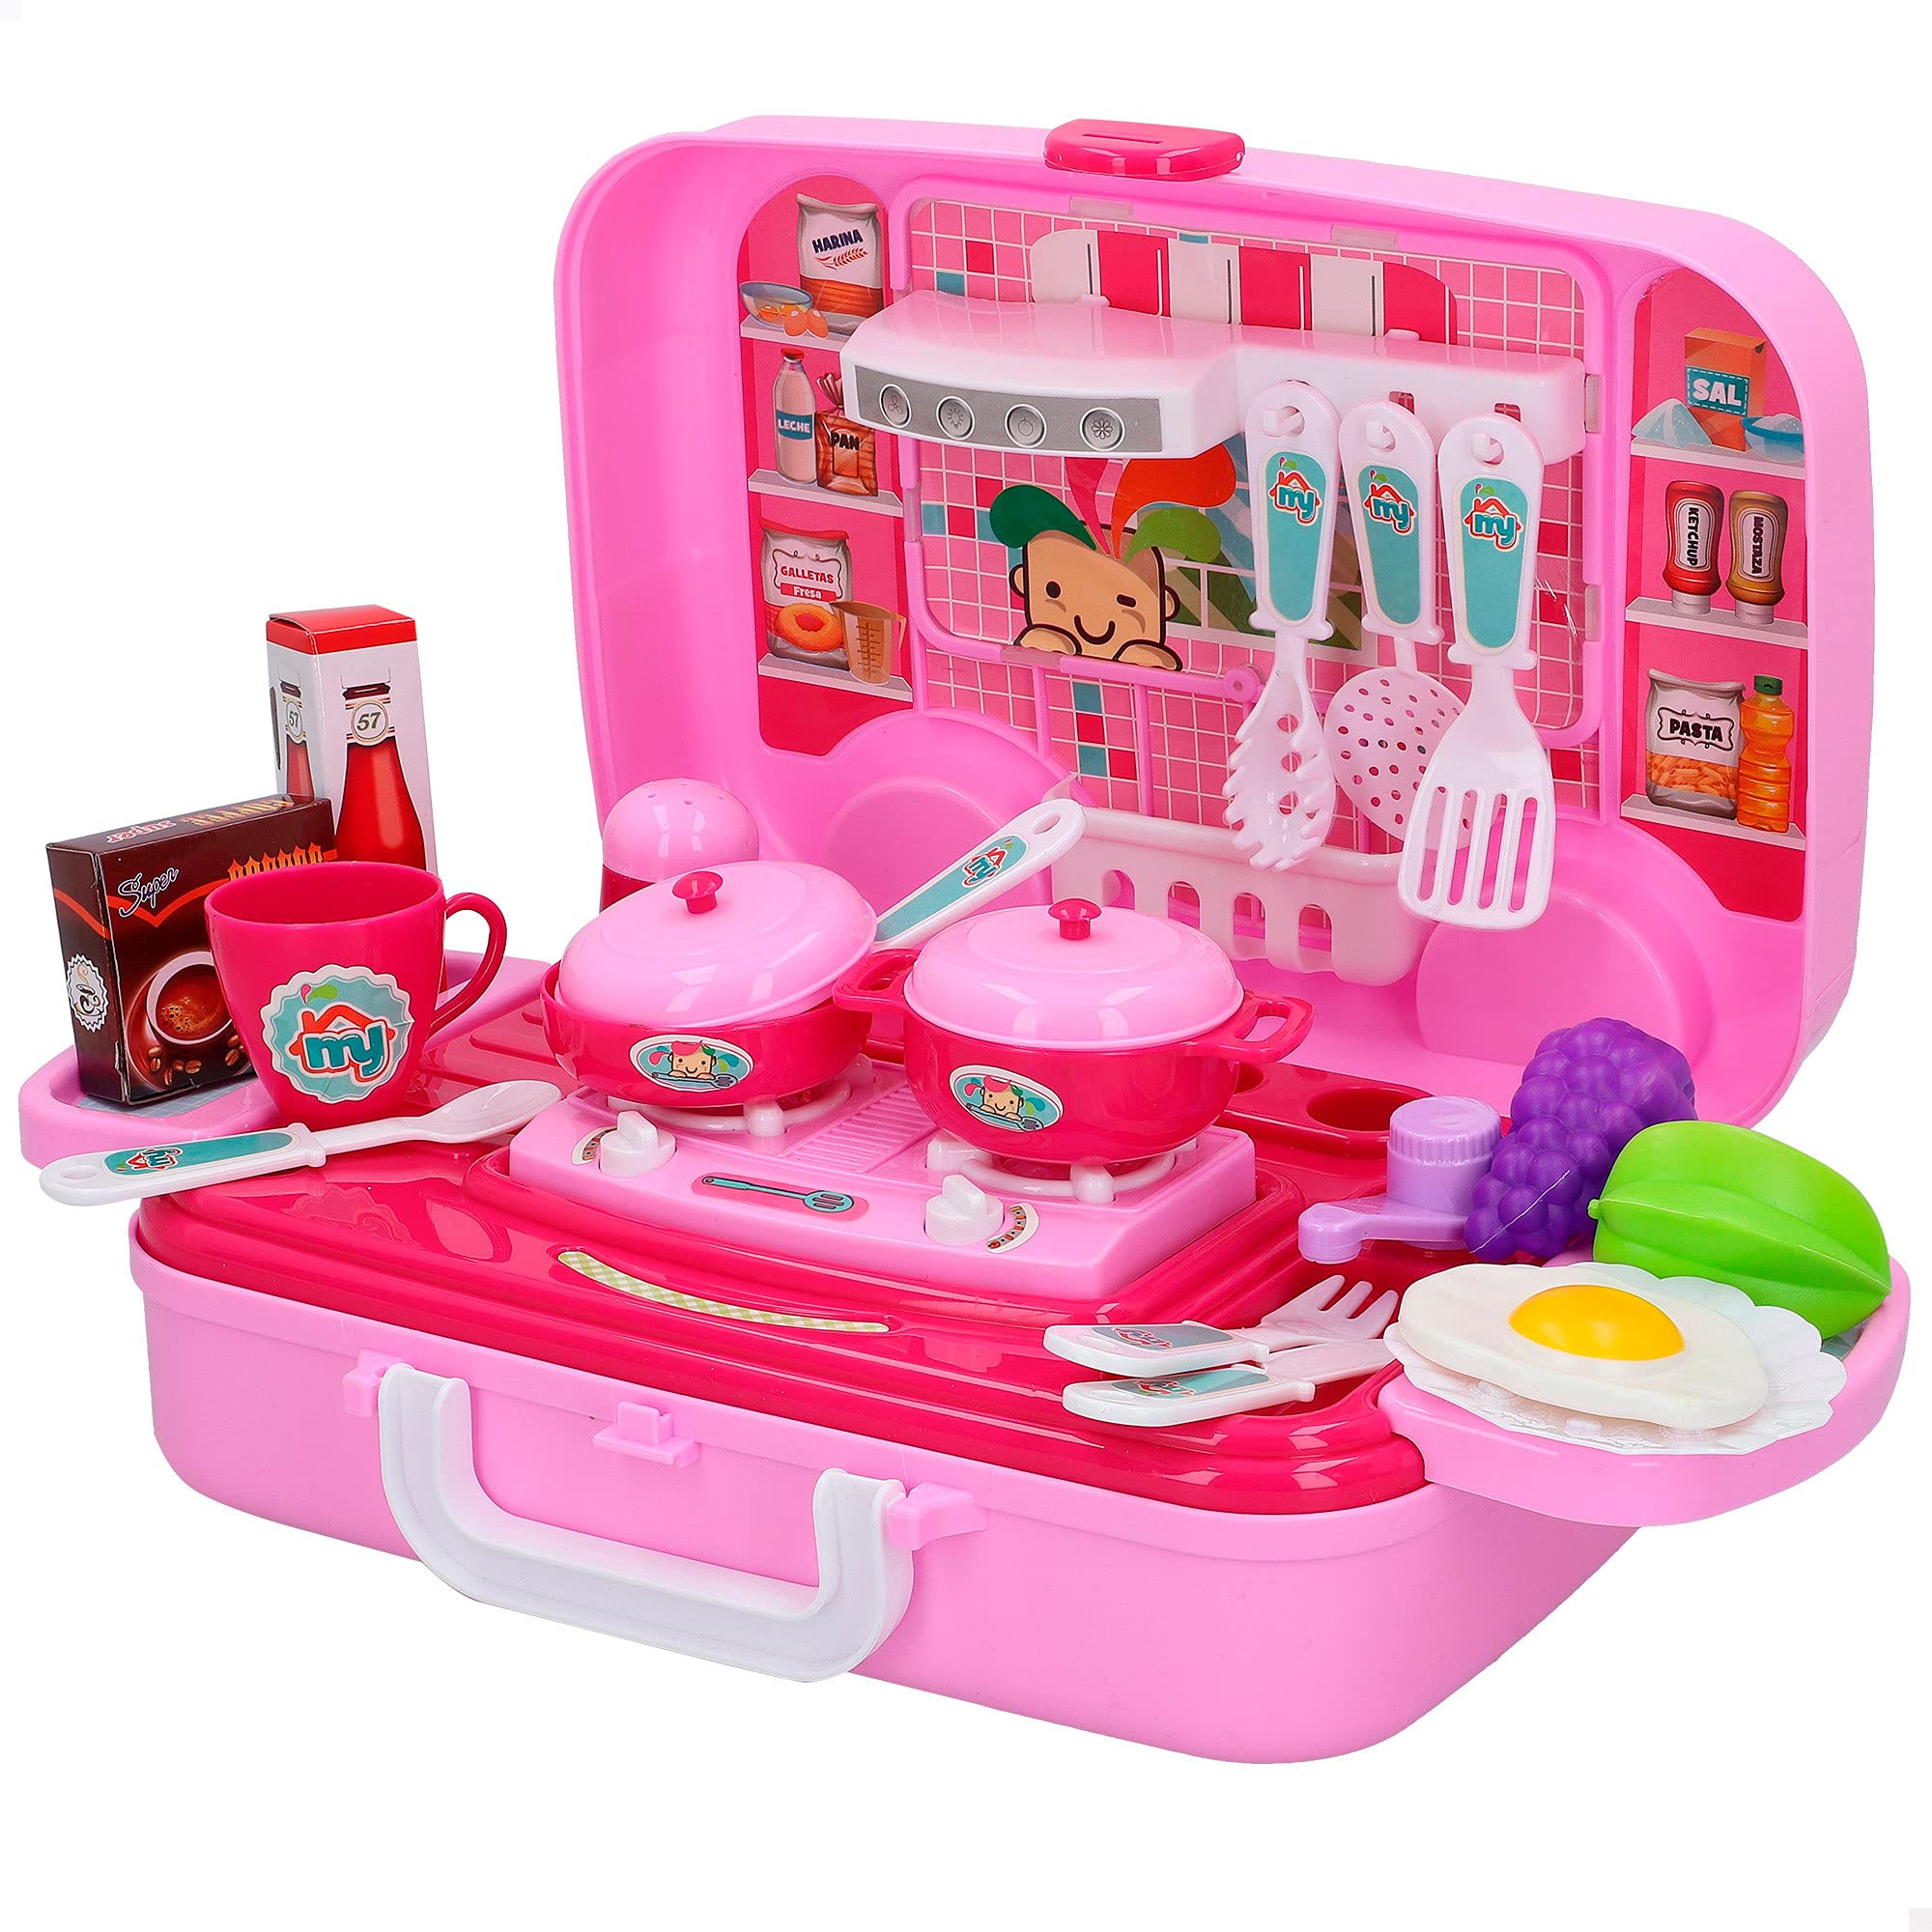 ColorBaby - Cucina giocattolo, valigetta con 17 accessori, cucina per –